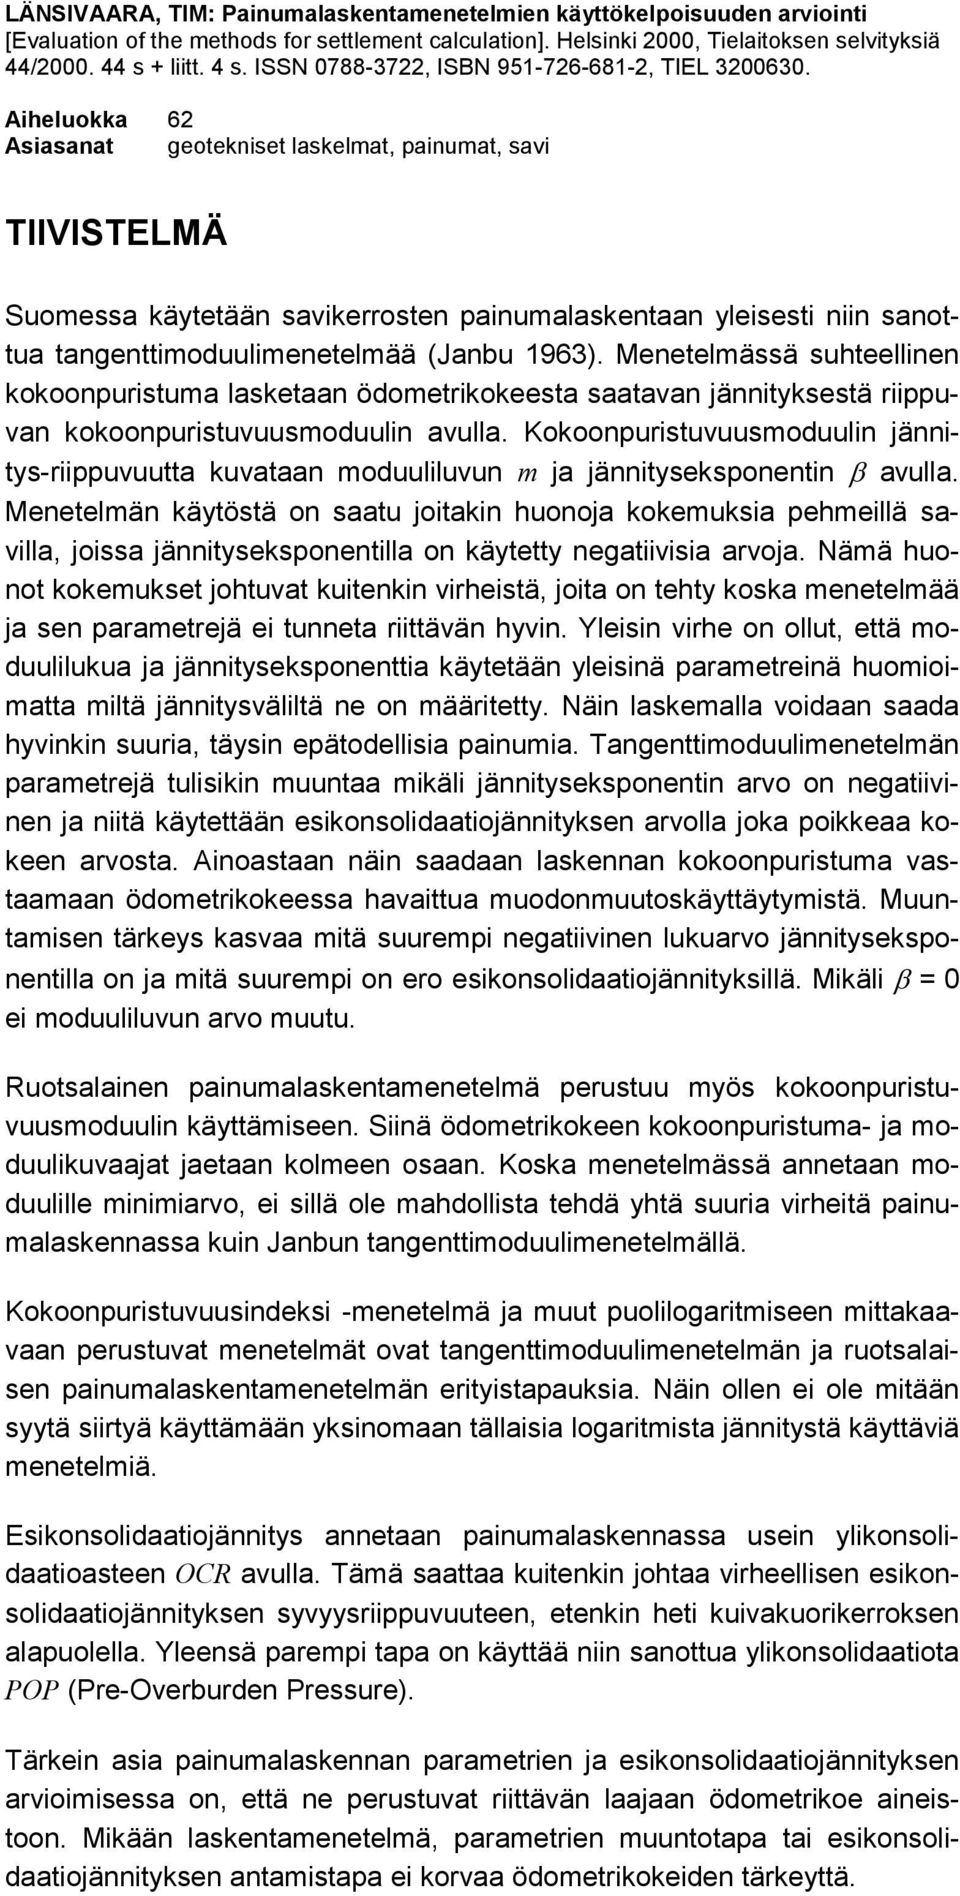 Aiheluokka 62 Asiasanat geotekniset laskelmat, painumat, savi TIIVISTELMÄ Suomessa käytetään savikerrosten painumalaskentaan yleisesti niin sanottua tangenttimoduulimenetelmää (Janbu 1963).